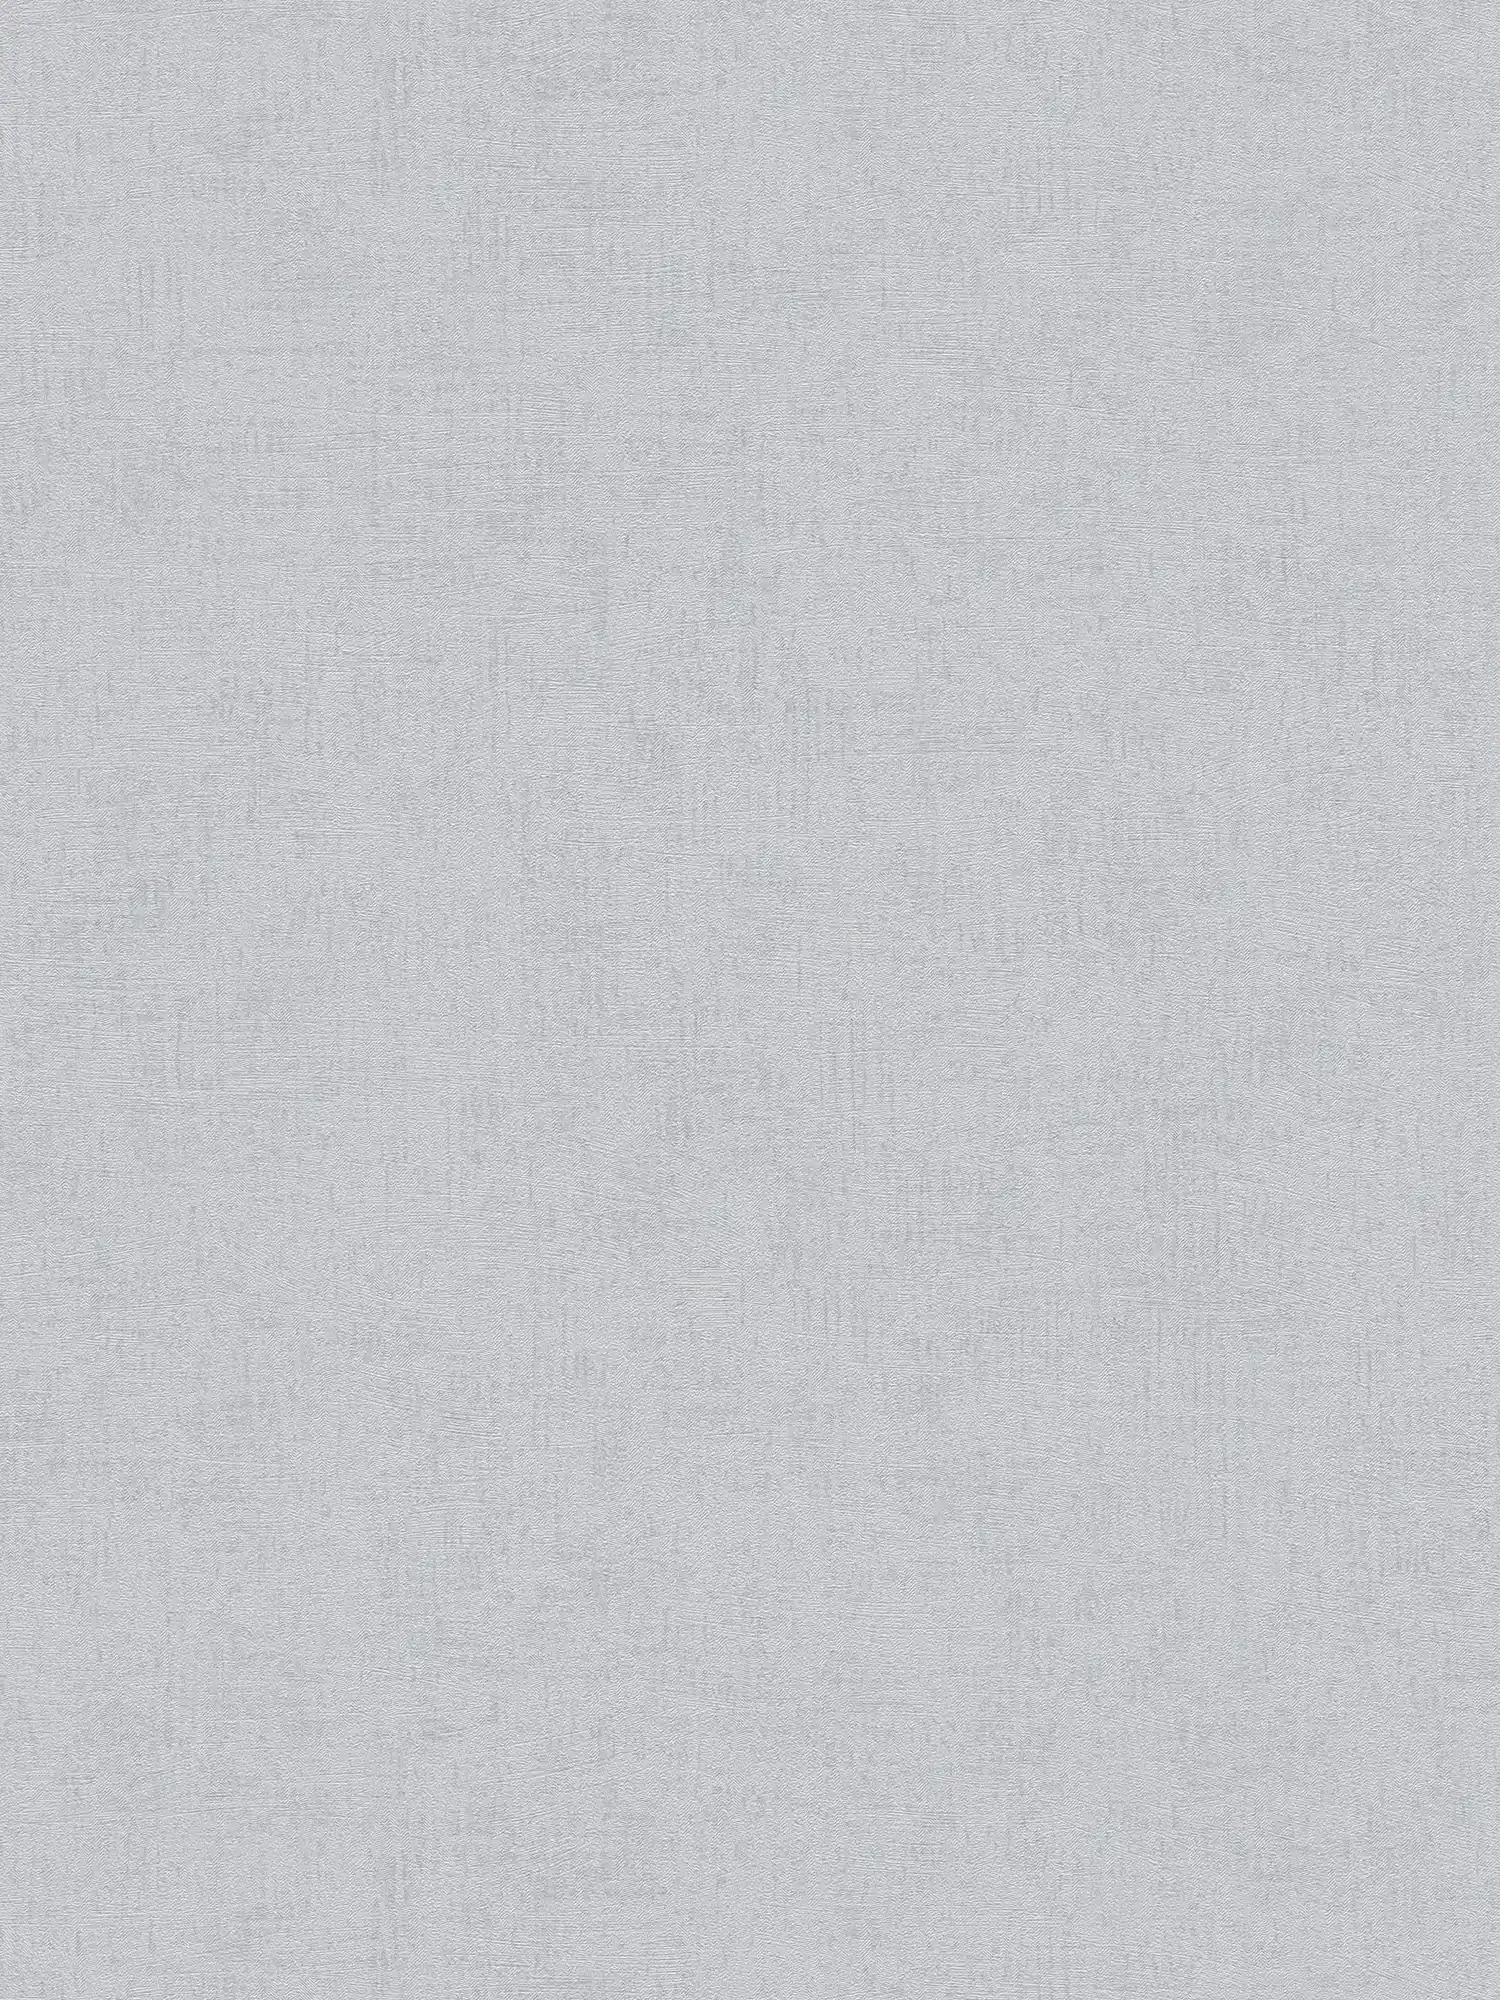 Papel pintado Melange gris liso con brillo metálico
